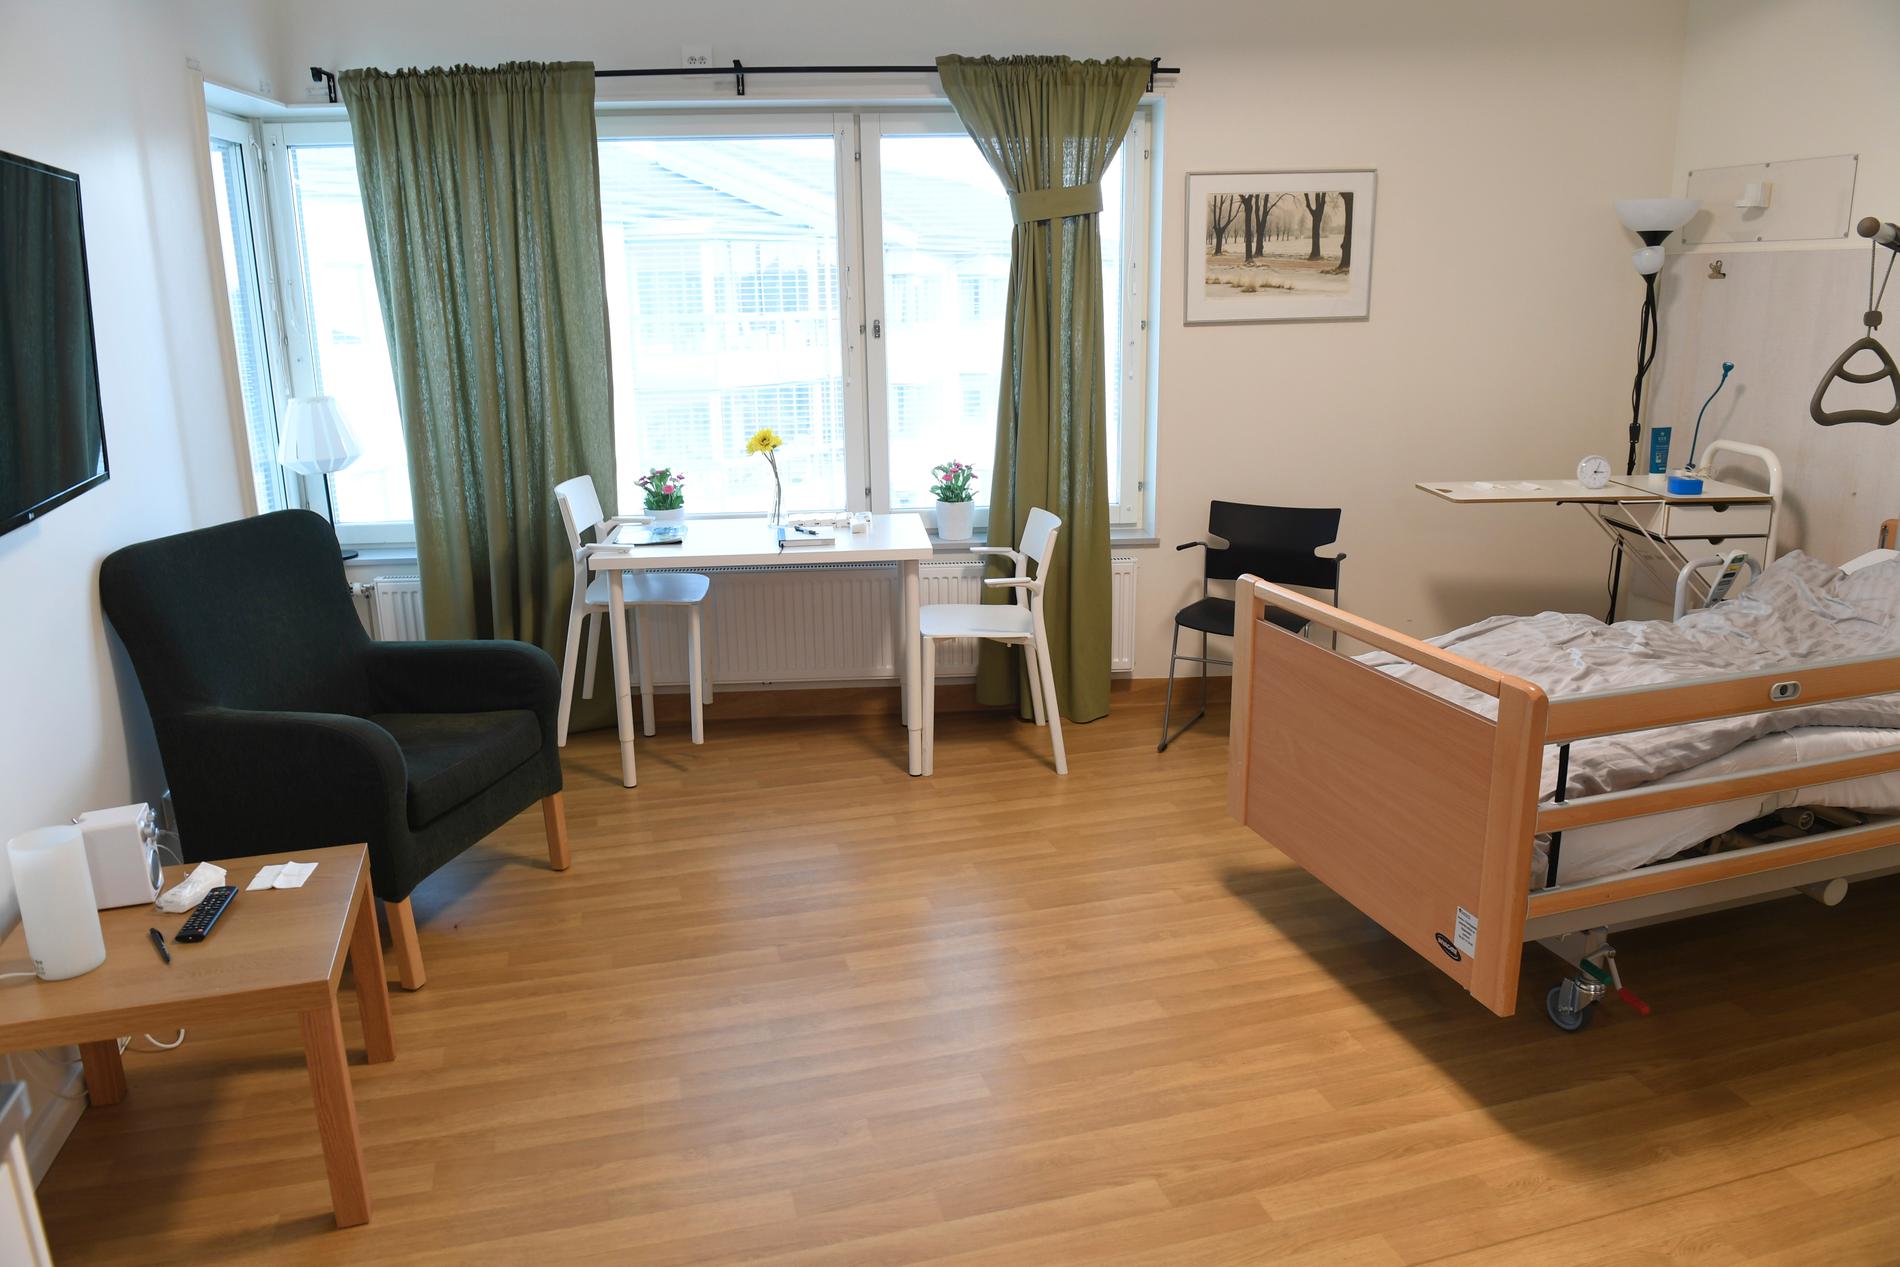 Dementa på ett boende i Kalmar län utsattes under flera år för kränkande behandling. Ivo kritiserar kommunens hantering av missförhållandena. Arkivbild från ett annat boende.